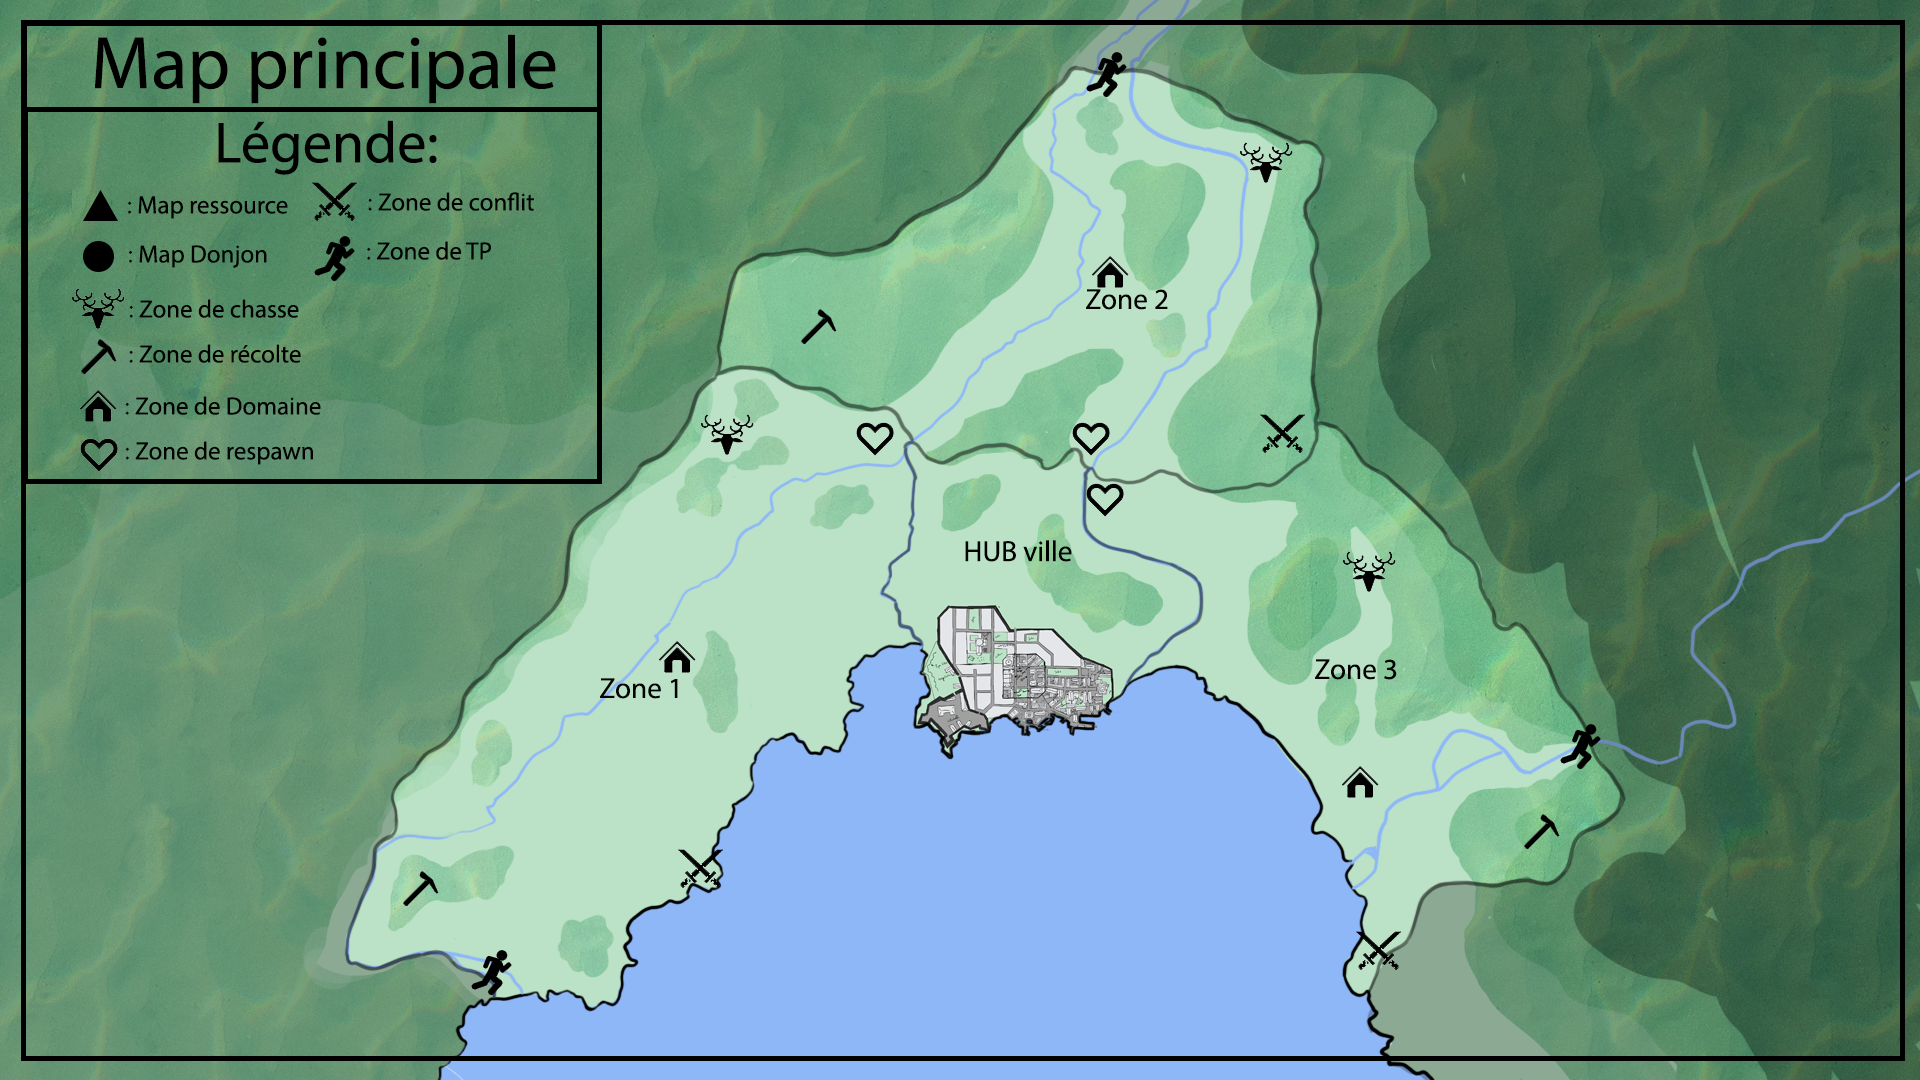 Map_principale.png